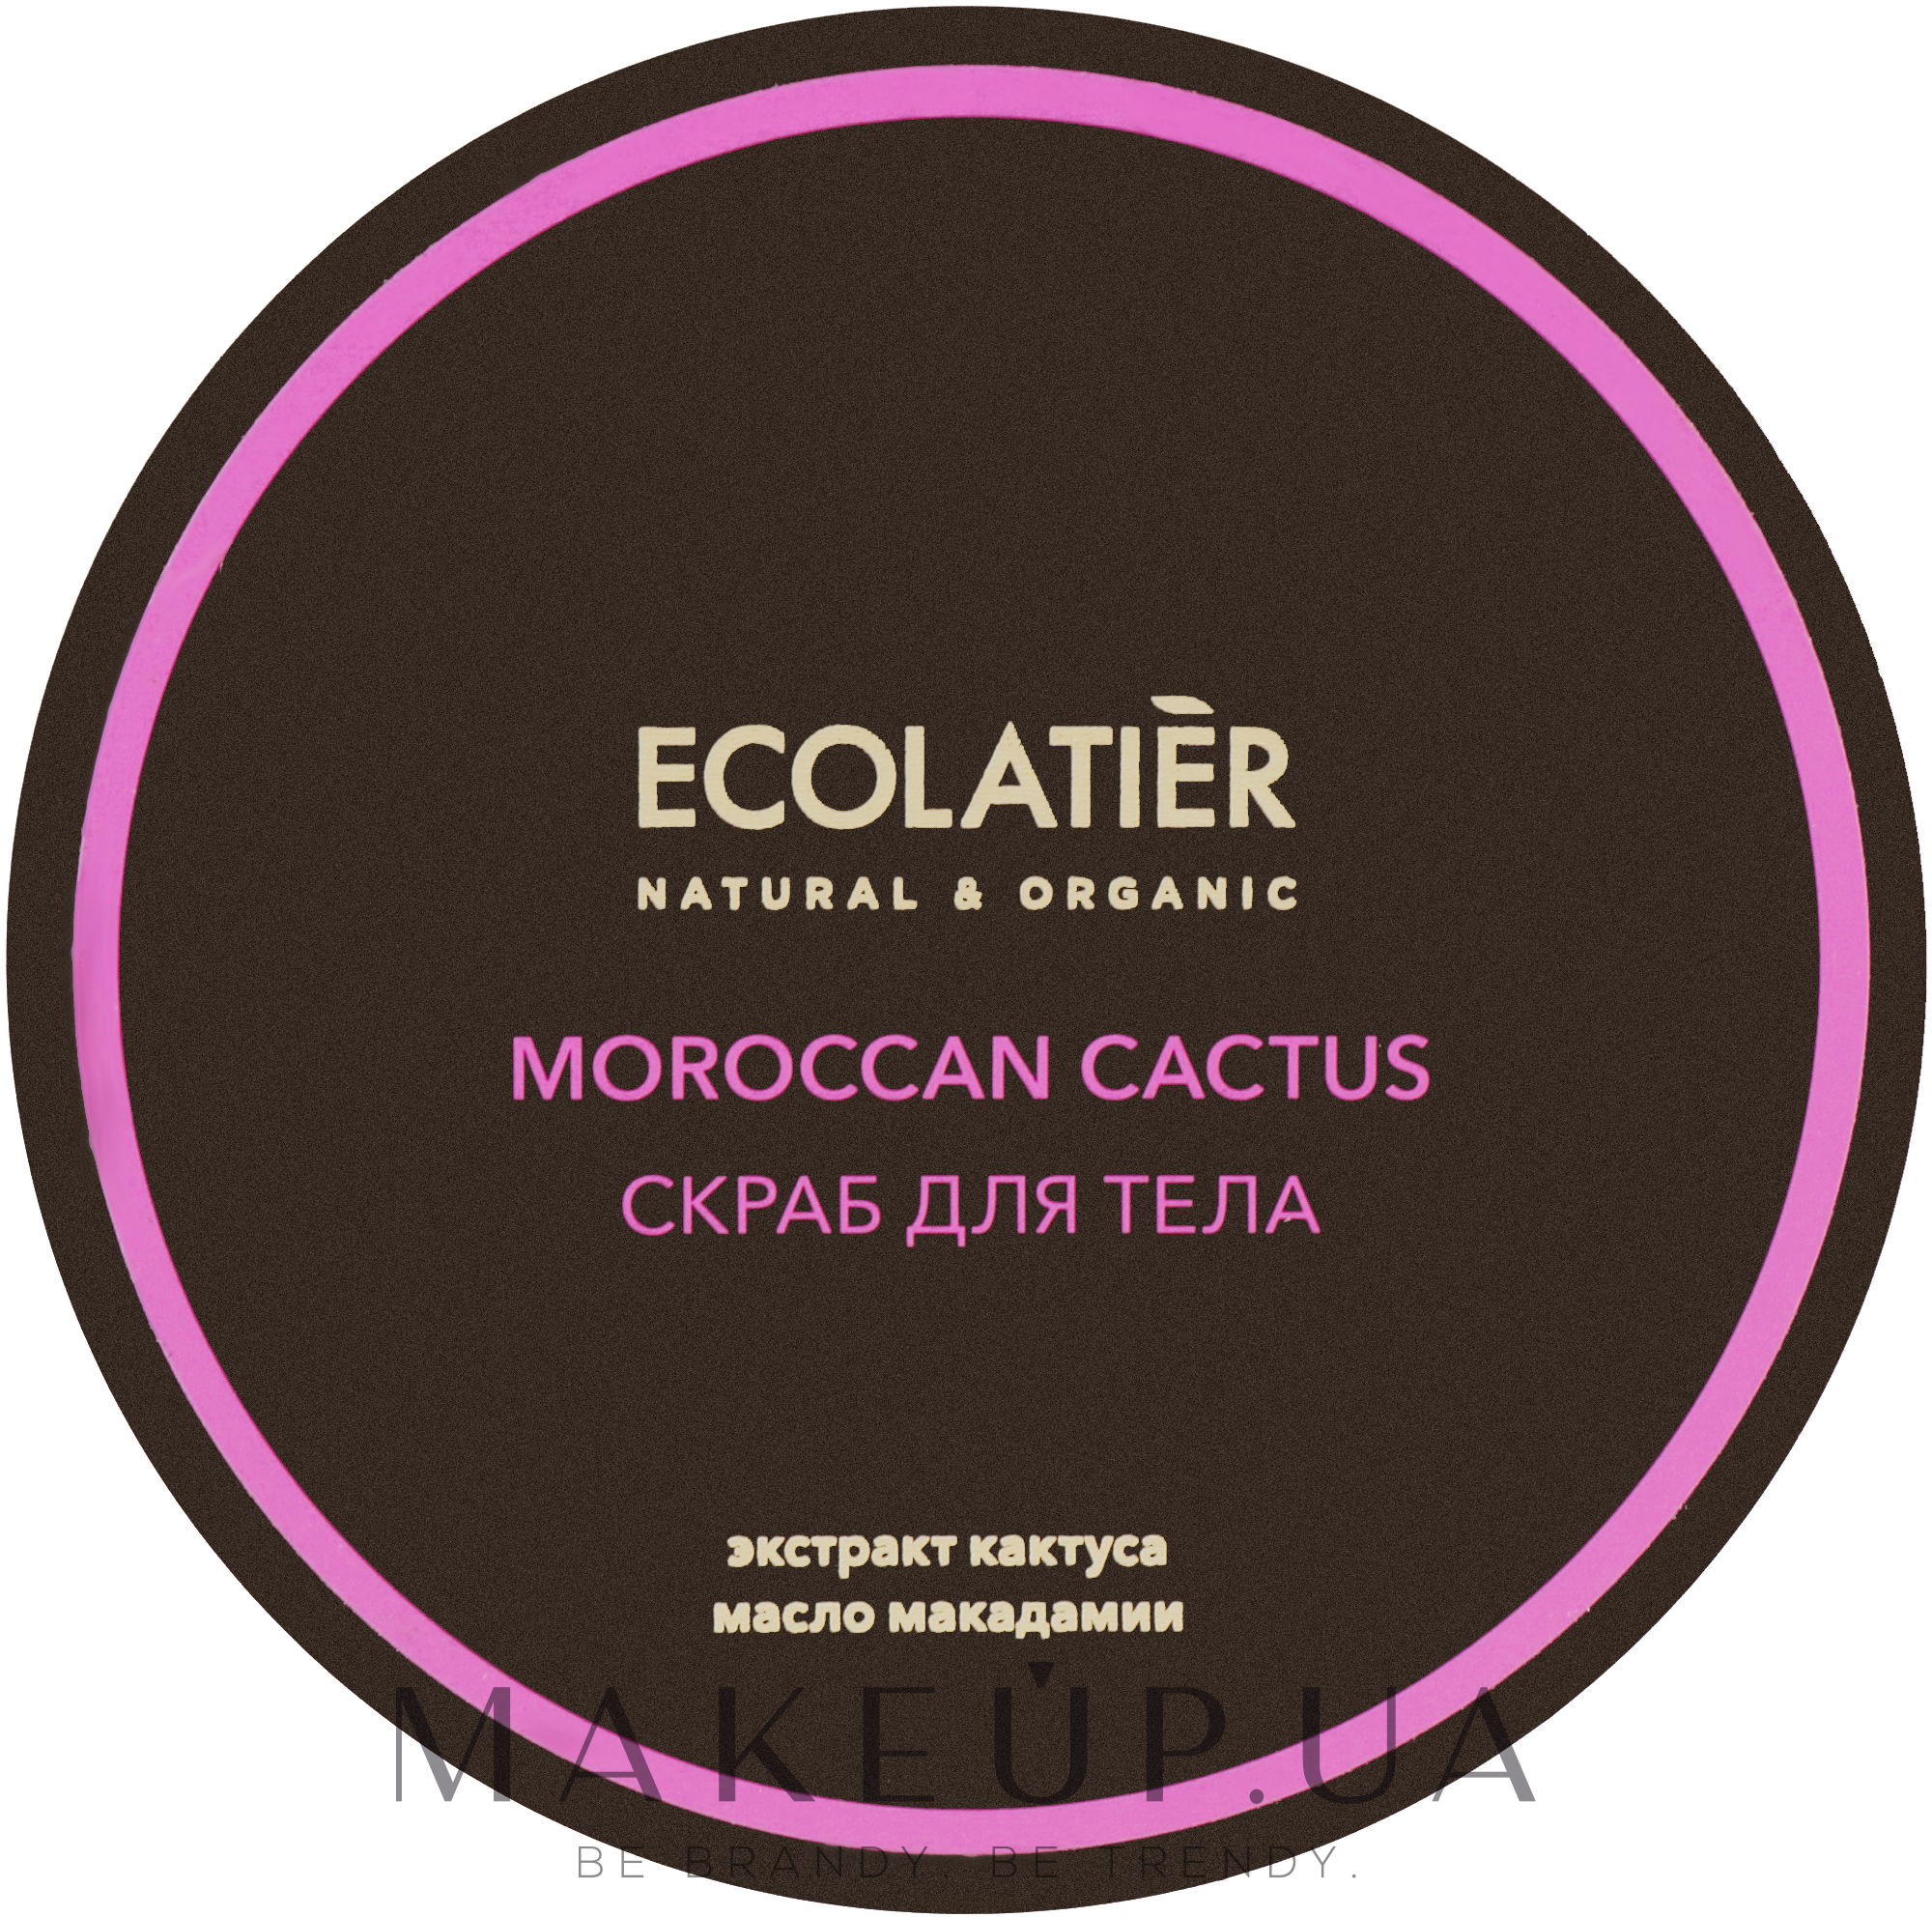 Ecolatier маска для волос. Ecolatier крем баттер для тела. Ecolatier скраб для тела. Ecolatier косметика логотип.